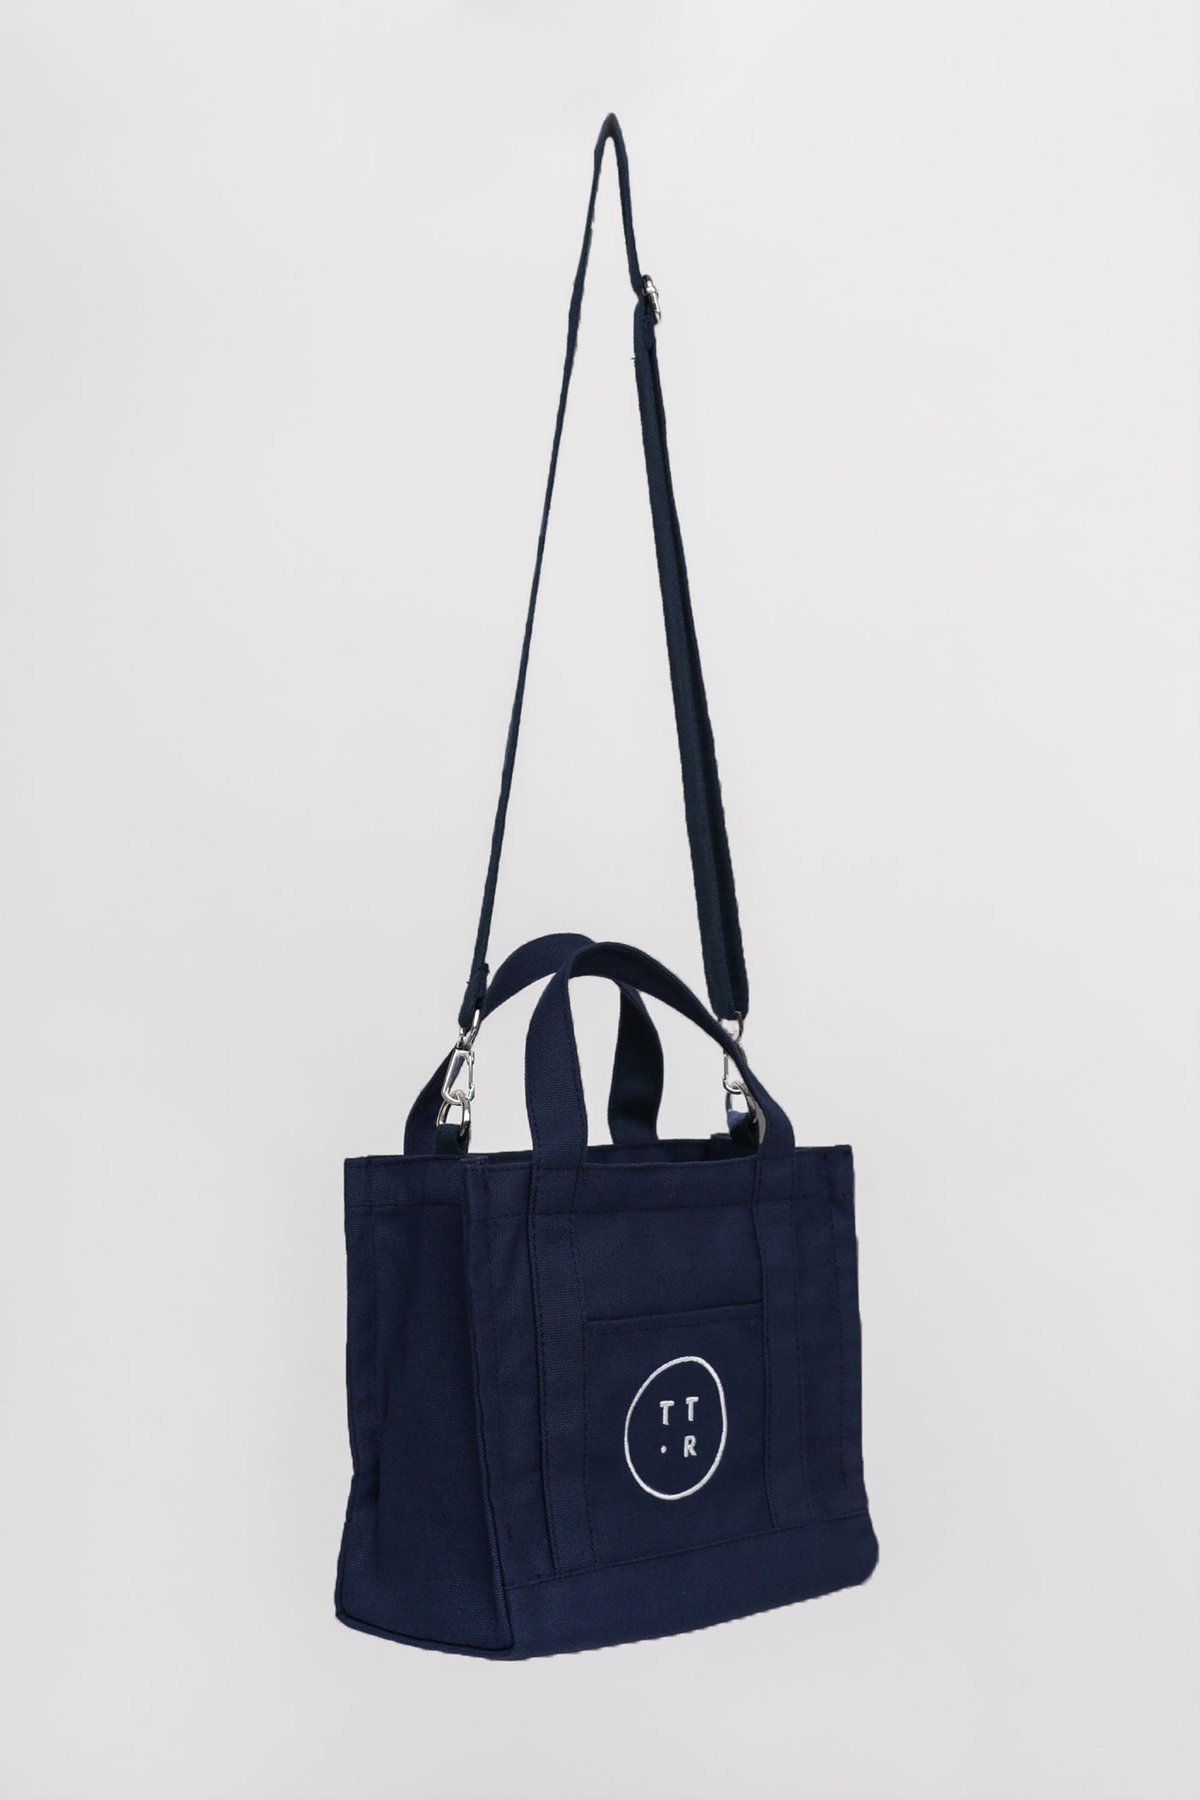 Grab & Go TTR Logo Embroidered Bag (Royal Blue)